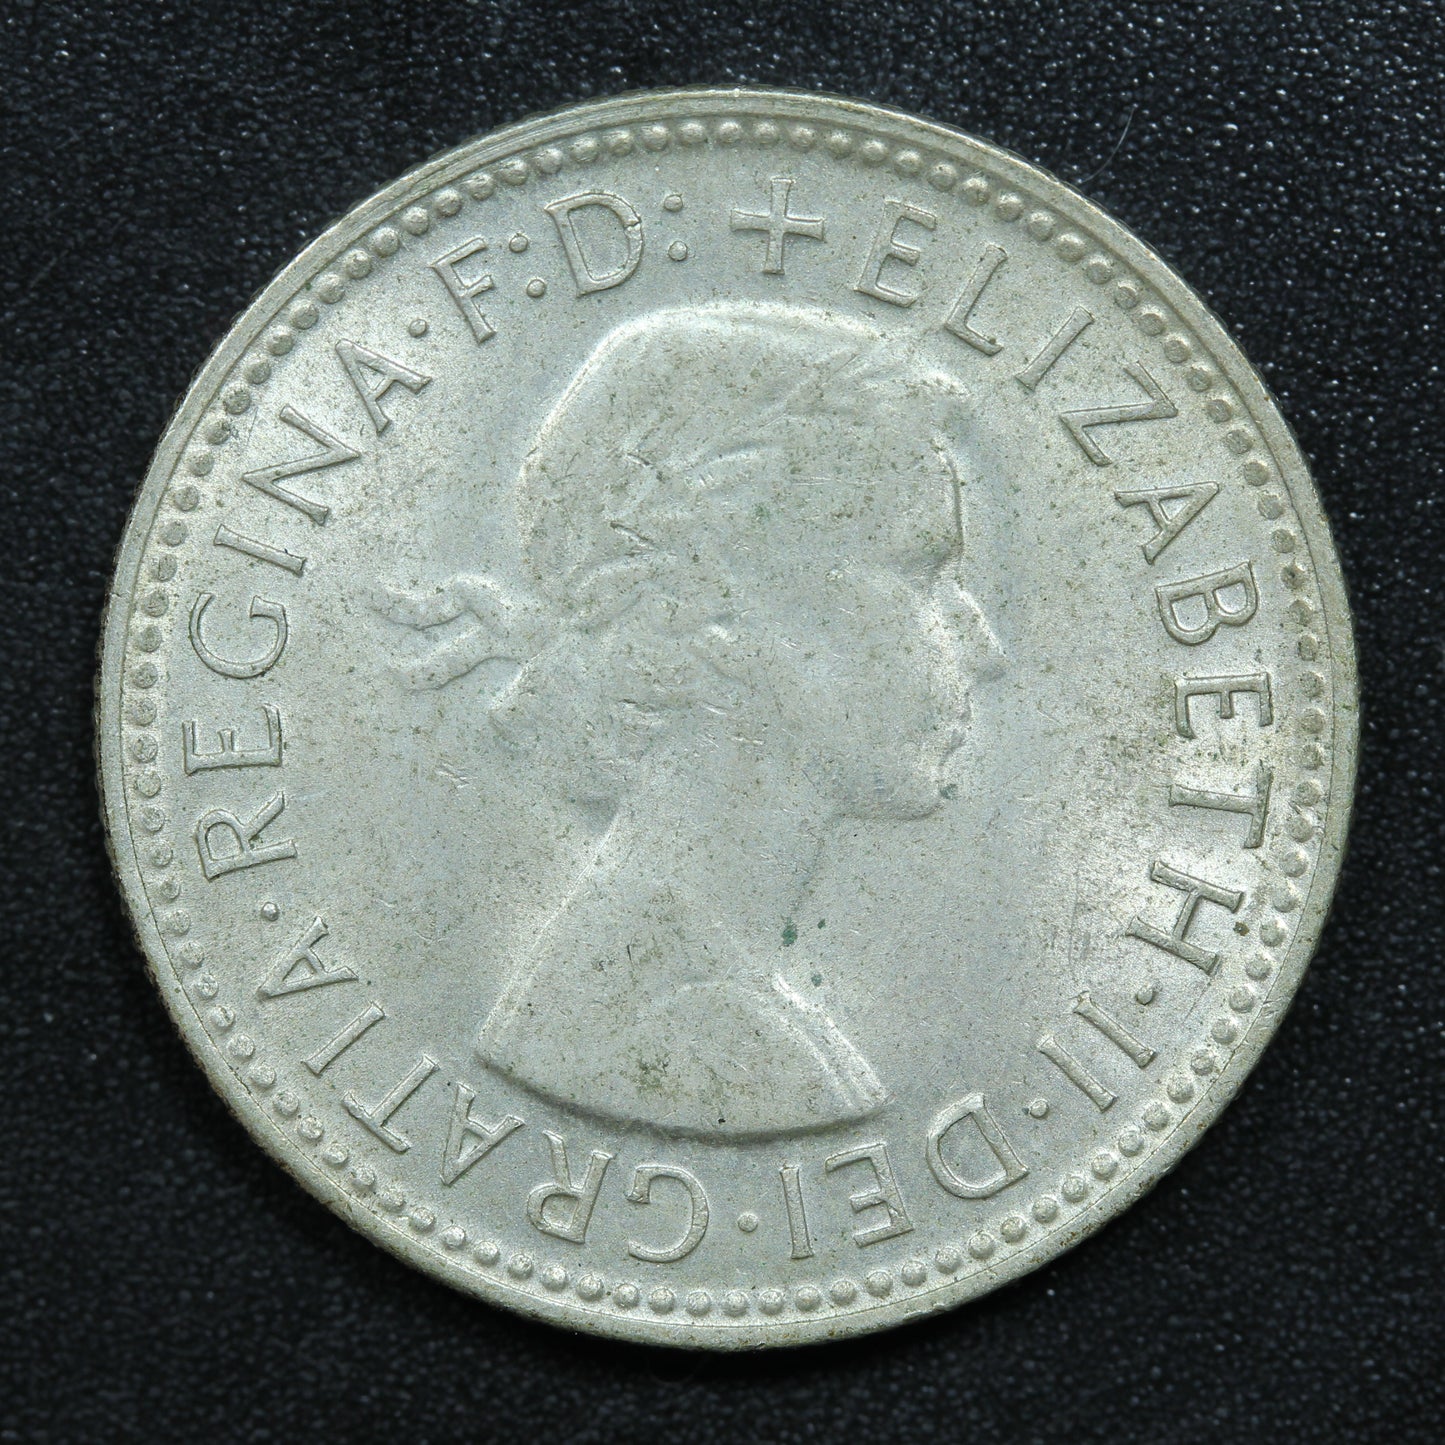 1961 Australia Shilling Silver Coin - KM# 59